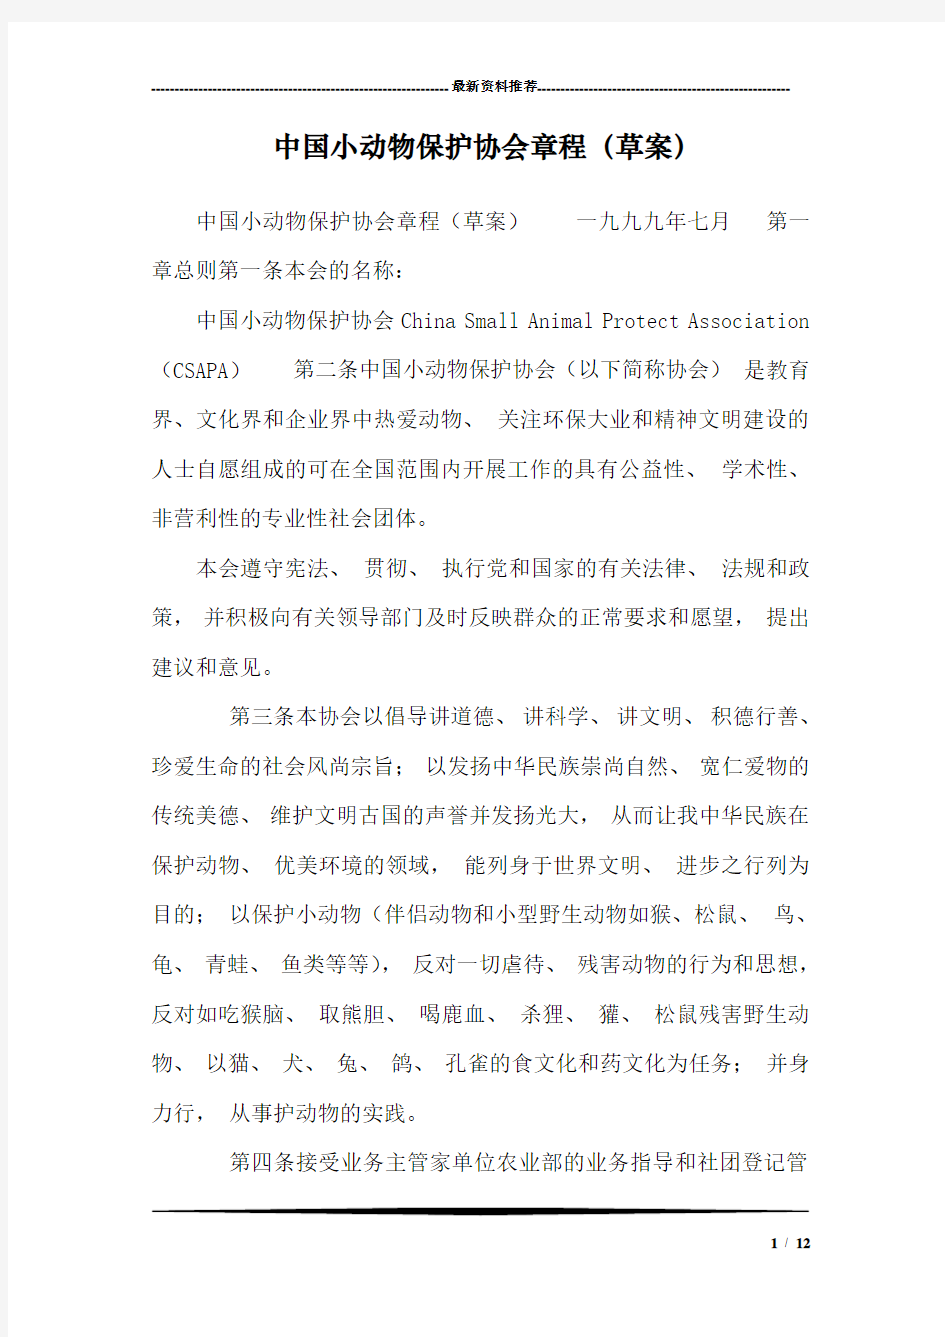 中国小动物保护协会章程(草案)